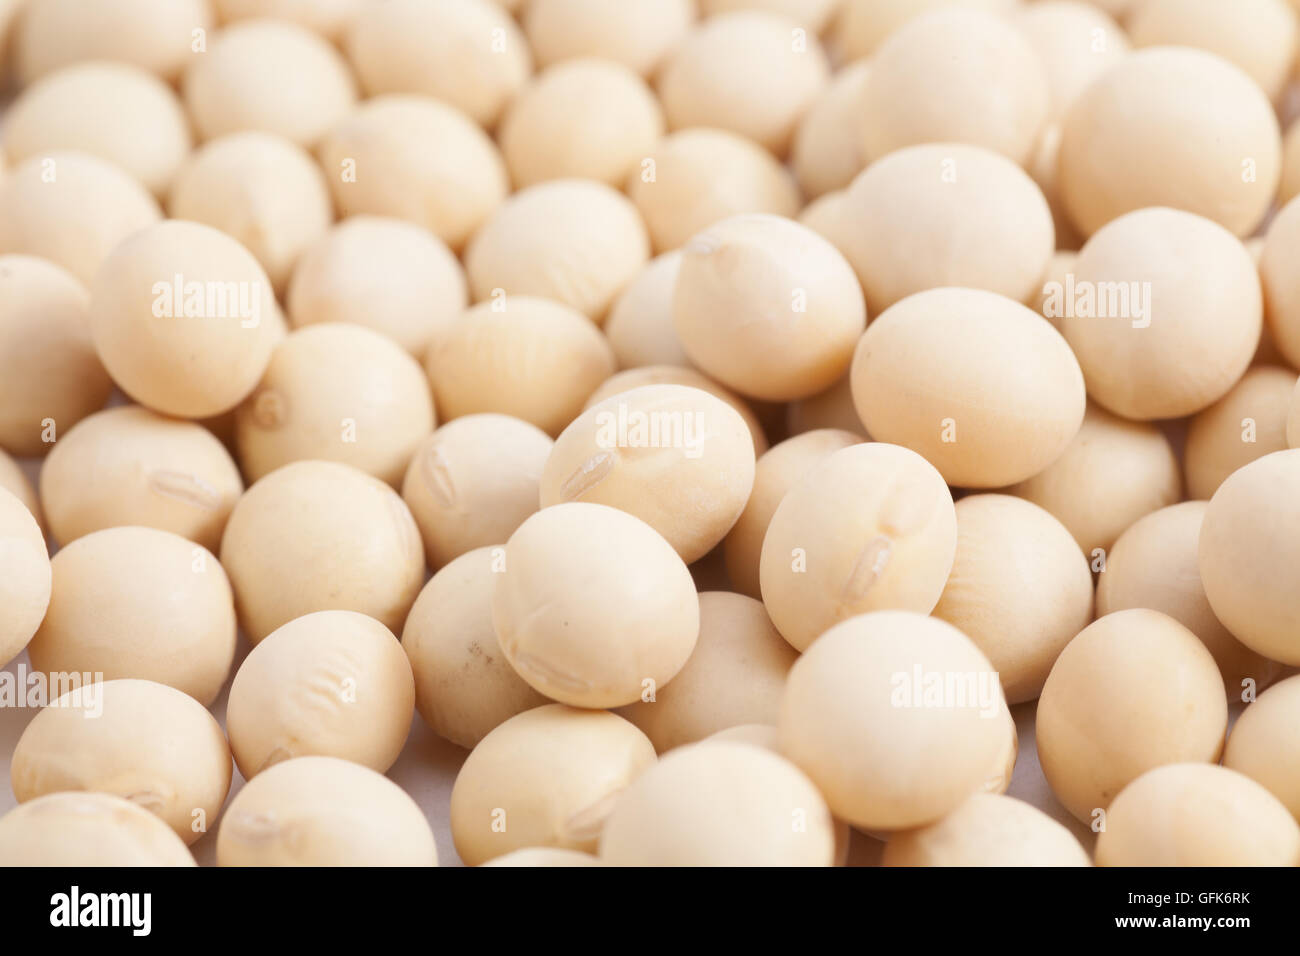 Soy beans in full frame Stock Photo